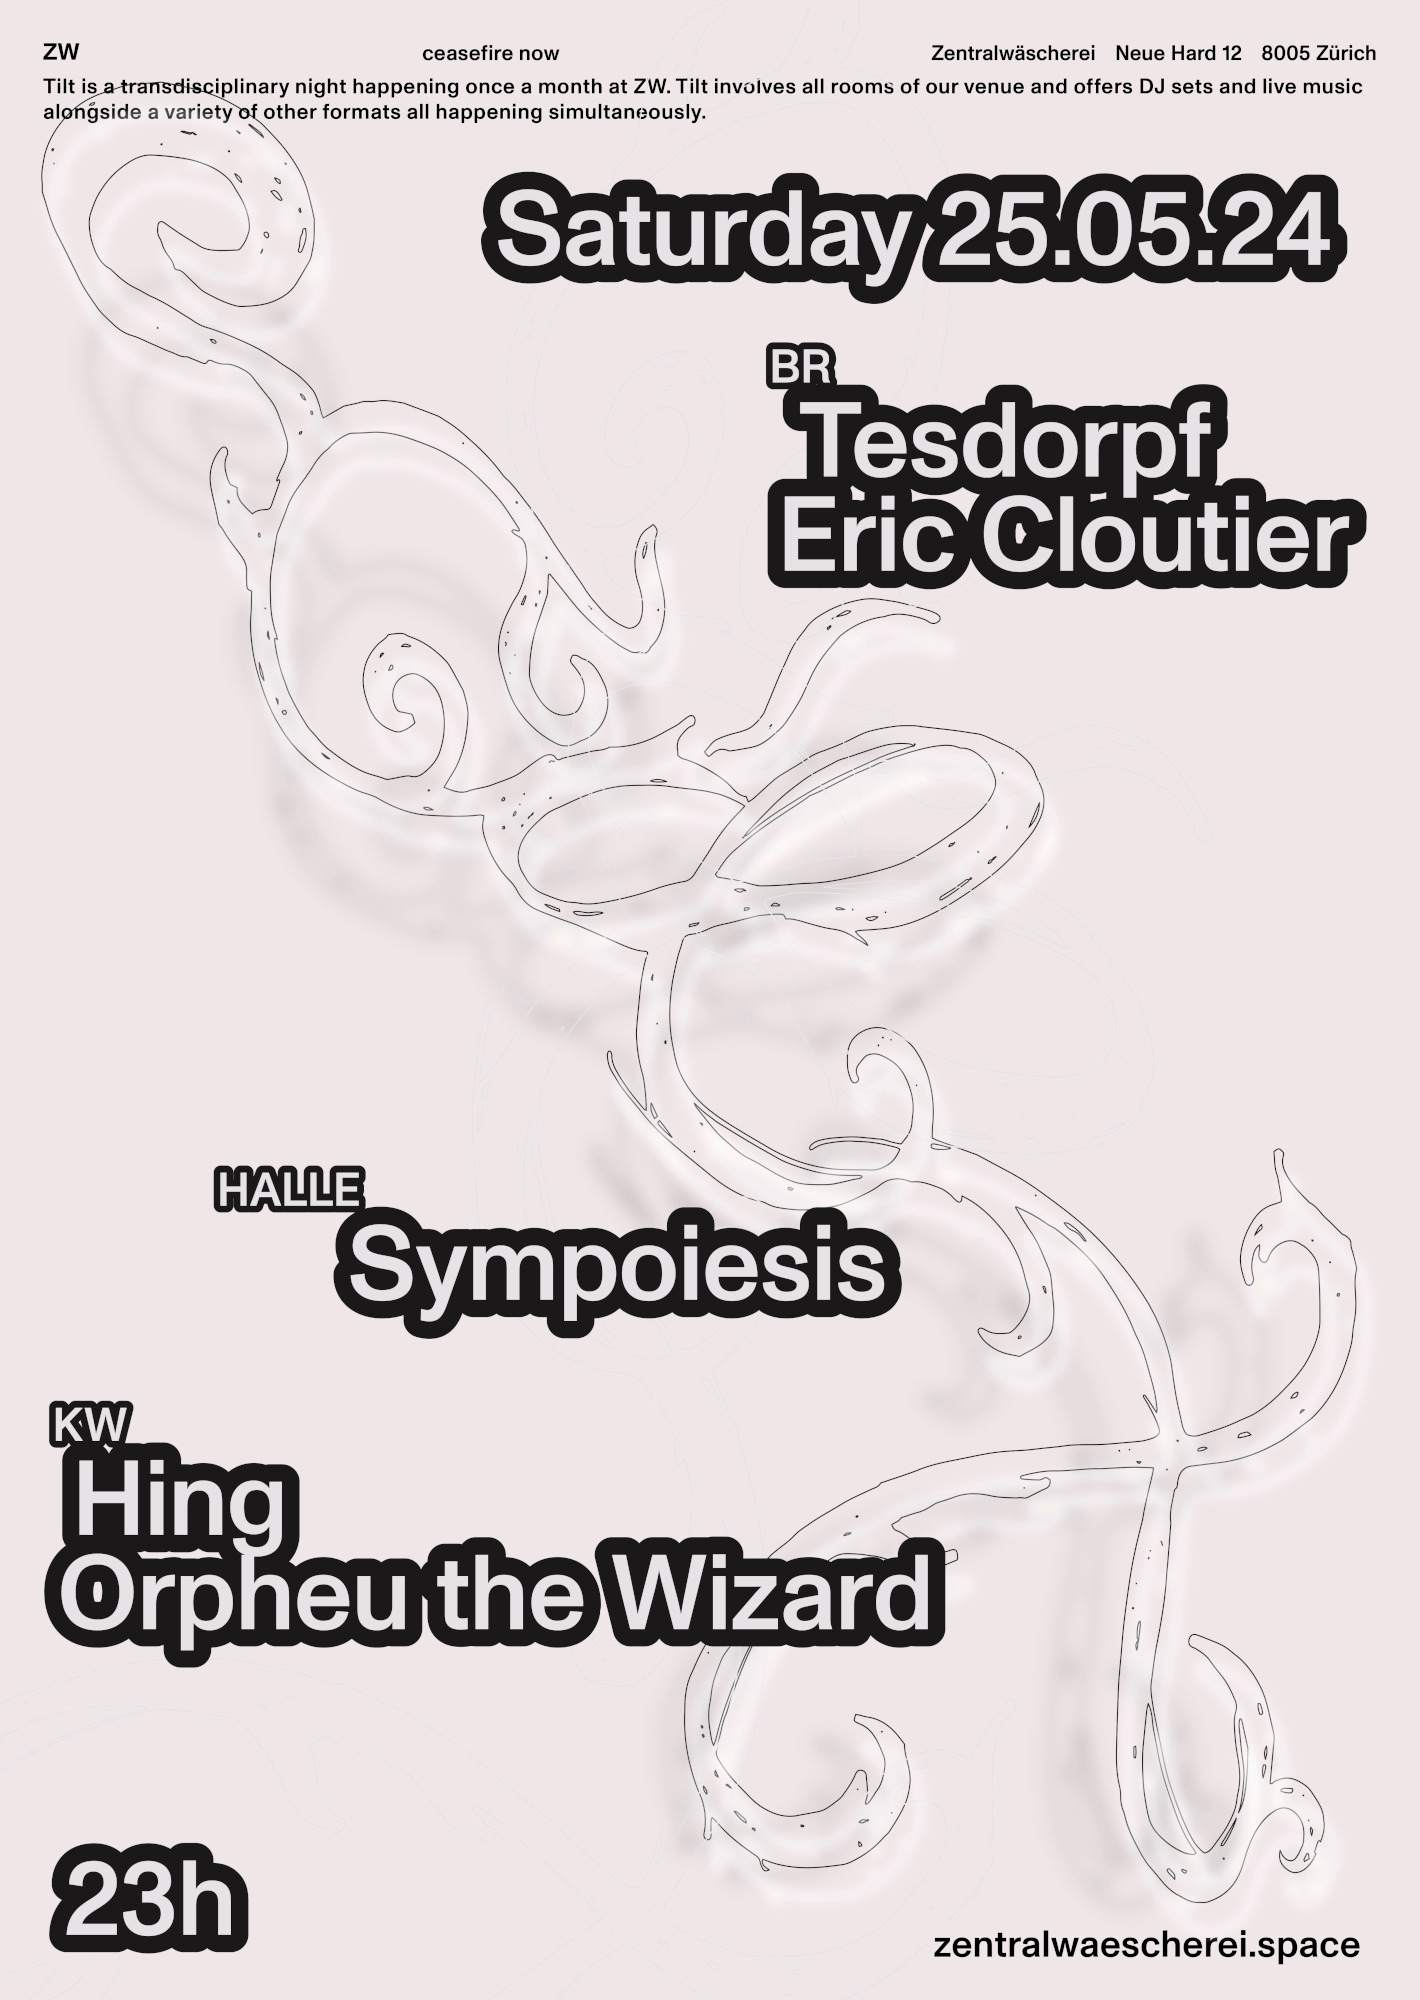 ZW-TILT with Orpheu The Wizard, Eric Cloutier, Tesdorpf, Hing & Sympoiesis - Página frontal